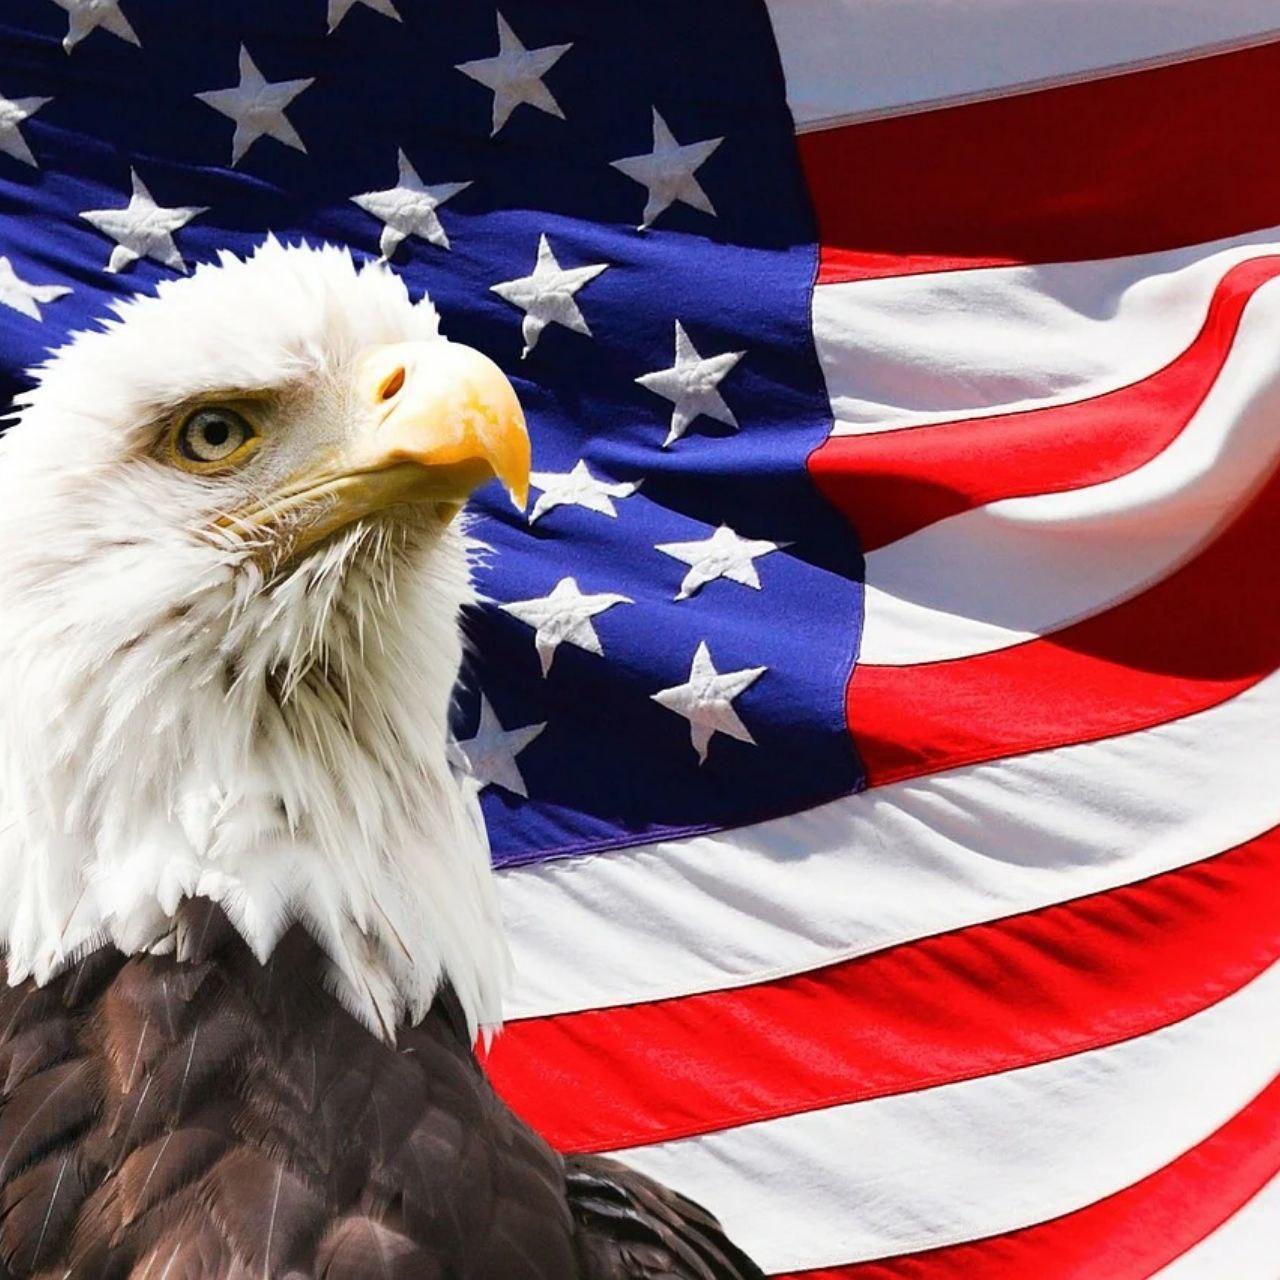 Vk americans. Символ Америки белоголовый Орлан. Флаг США. Американский Орел. Популярный символ США.